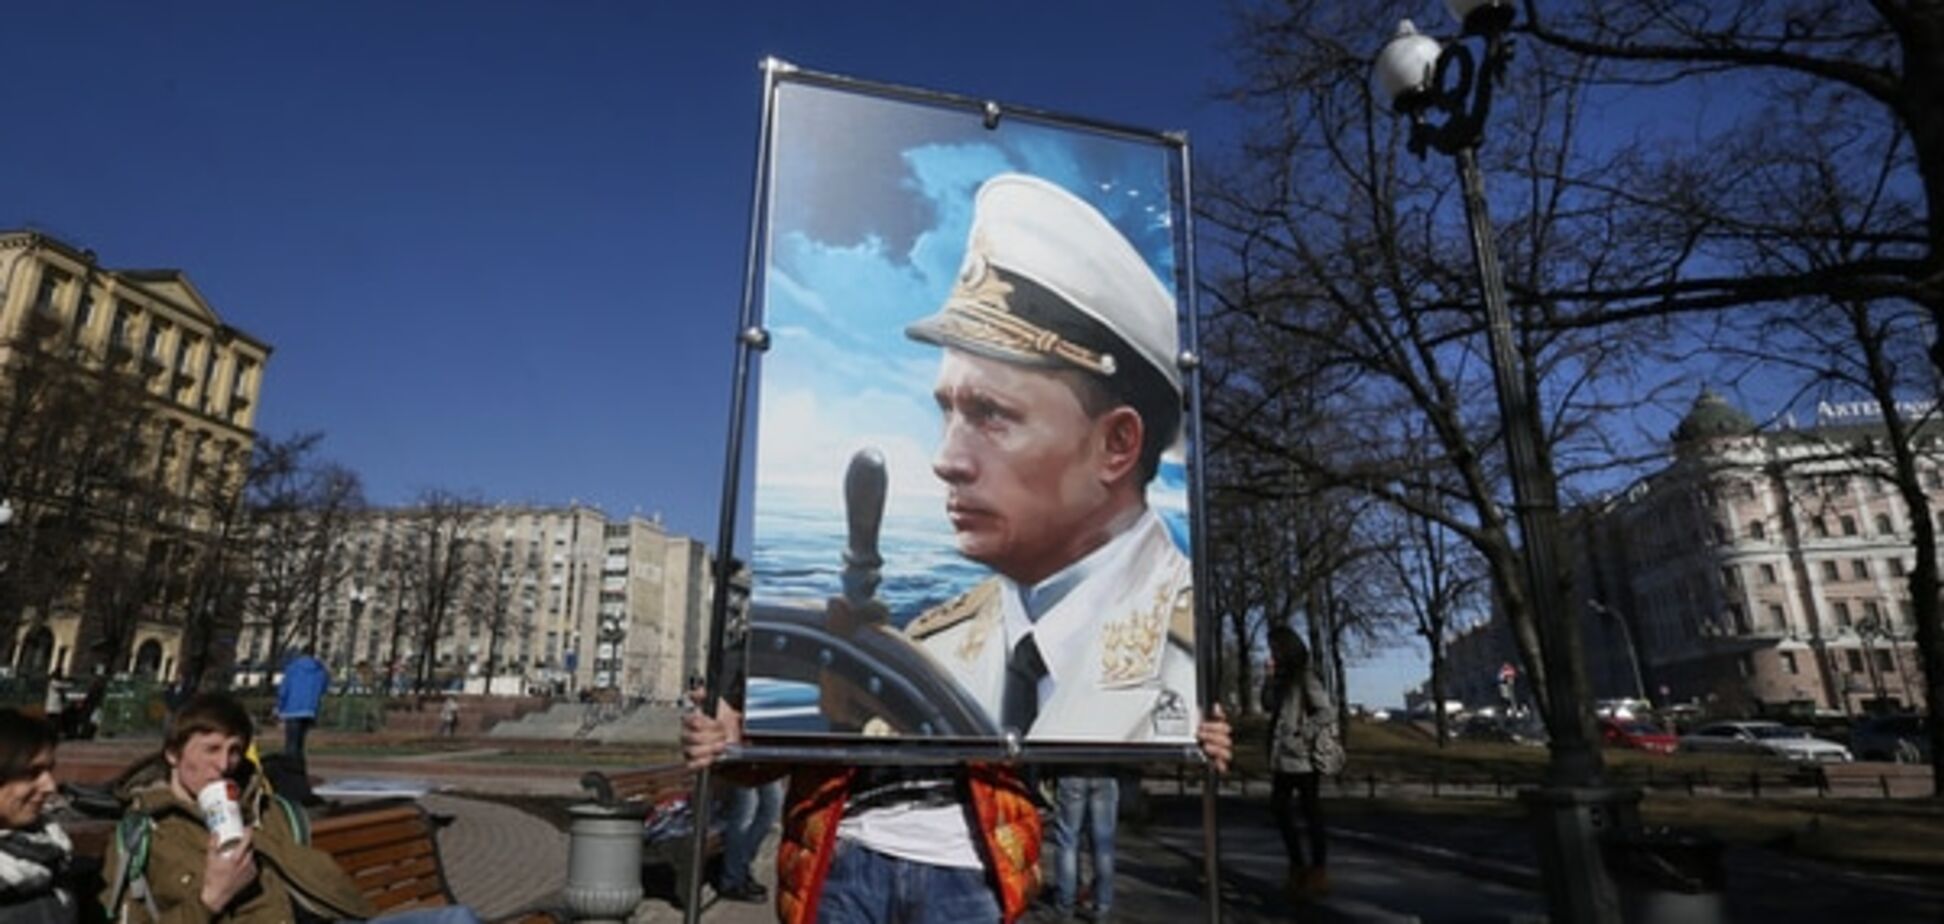 Юрист рассказал о катастрофических для России правовых последствиях аннексии Крыма